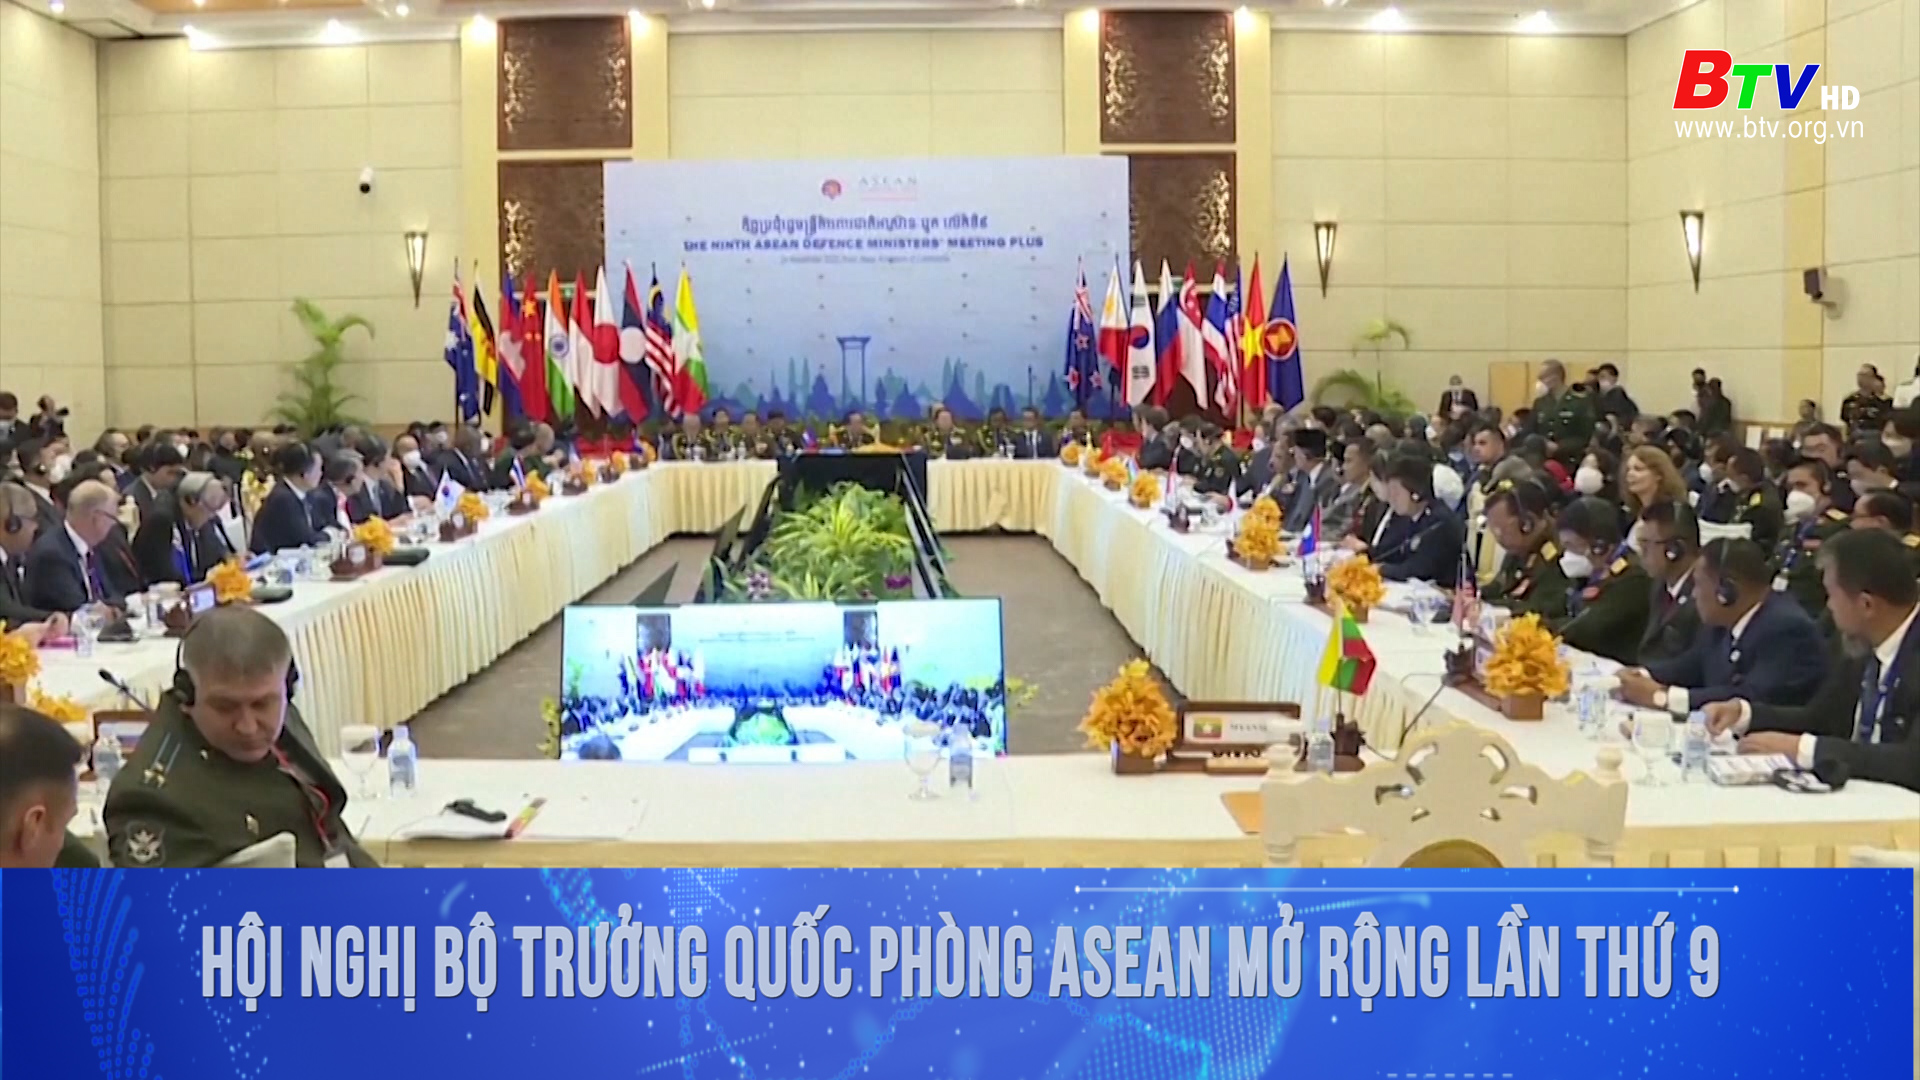 Hội nghị Bộ trưởng Quốc phòng ASEAN mở rộng lần thứ 9